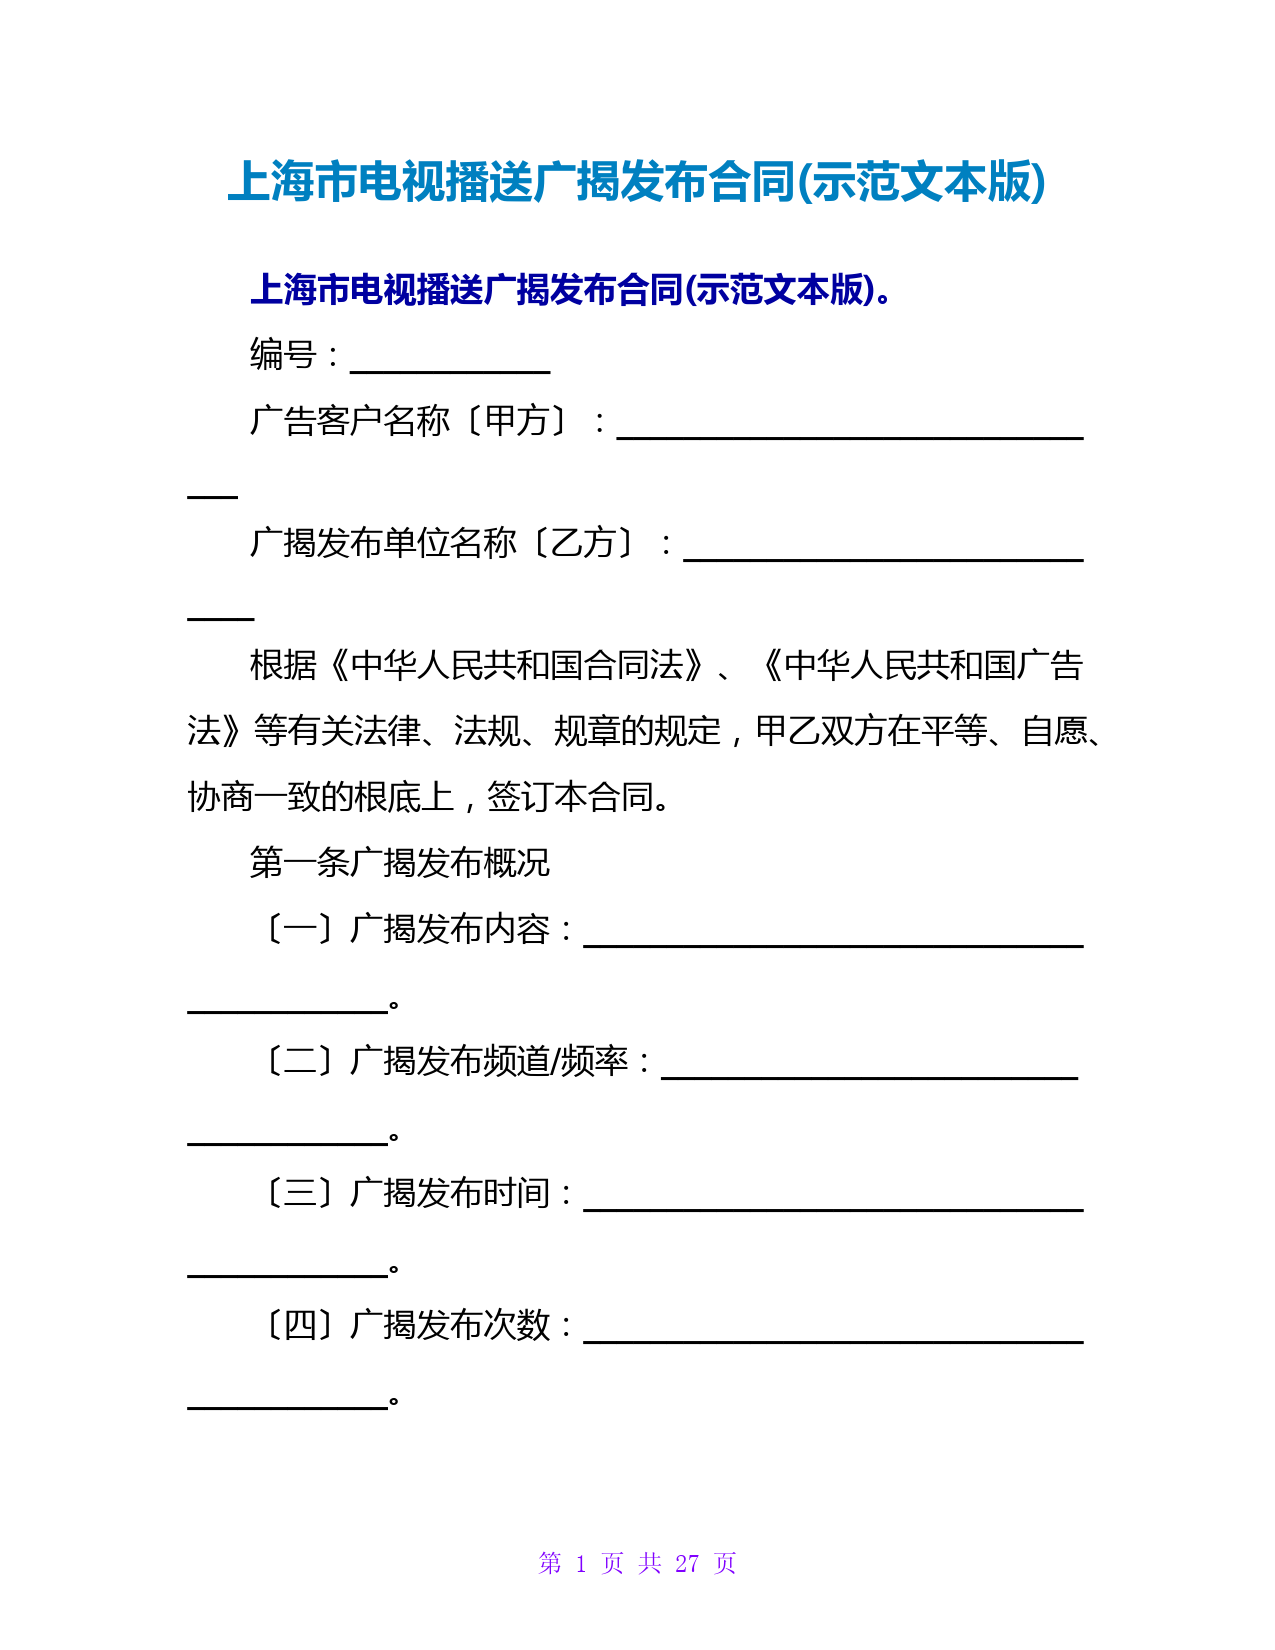 上海电视广播广告发布合同(示范文本版)